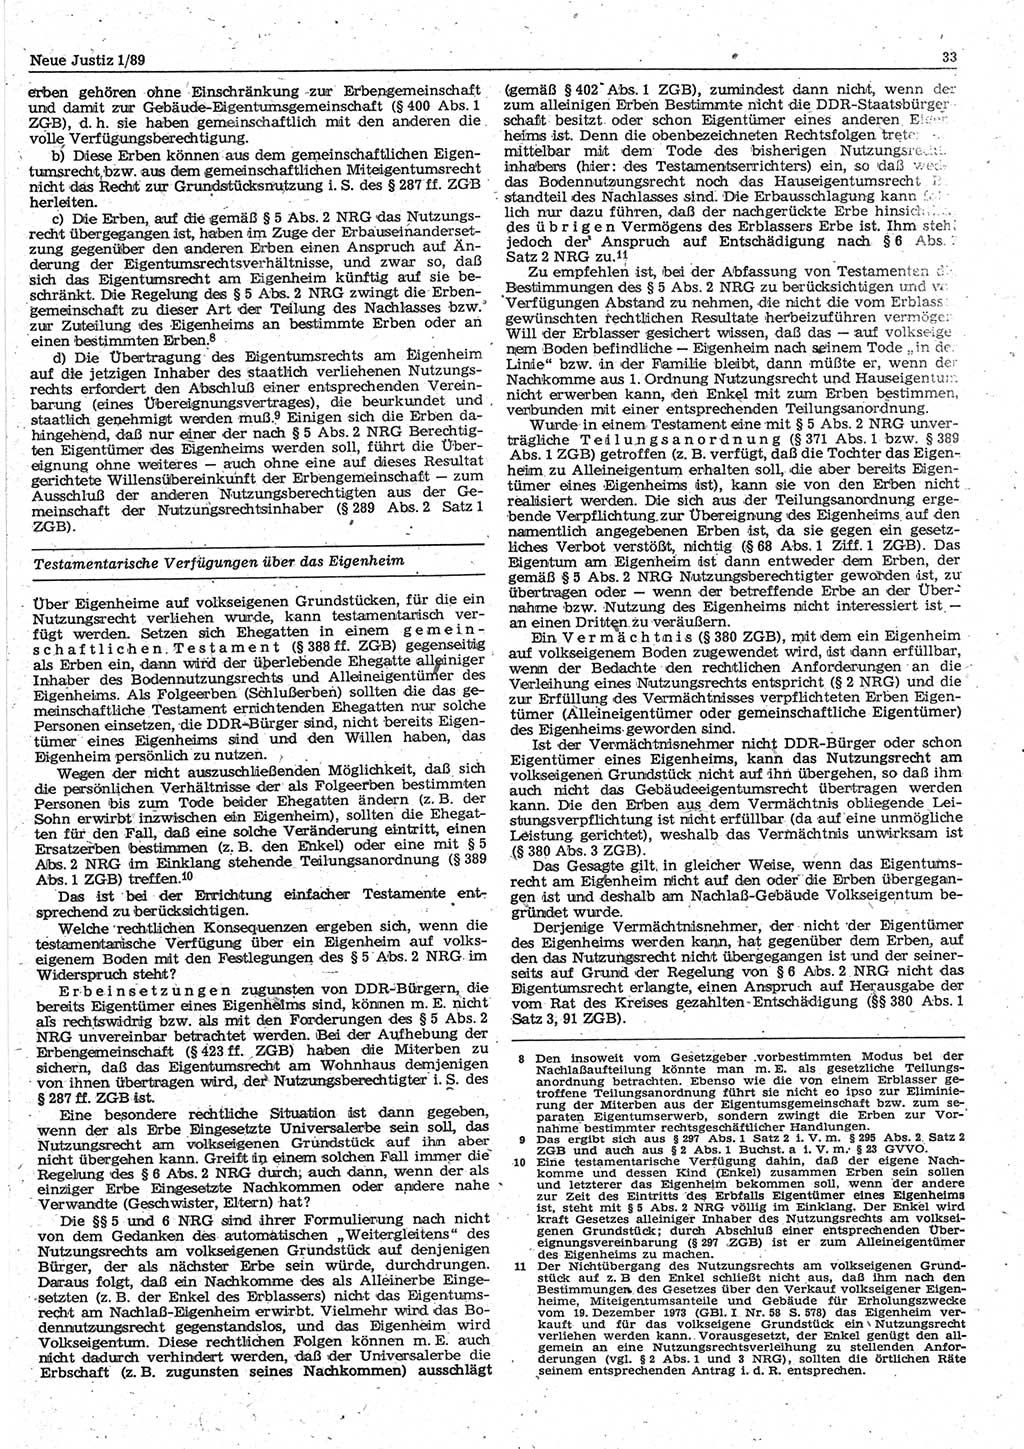 Neue Justiz (NJ), Zeitschrift für sozialistisches Recht und Gesetzlichkeit [Deutsche Demokratische Republik (DDR)], 43. Jahrgang 1989, Seite 33 (NJ DDR 1989, S. 33)